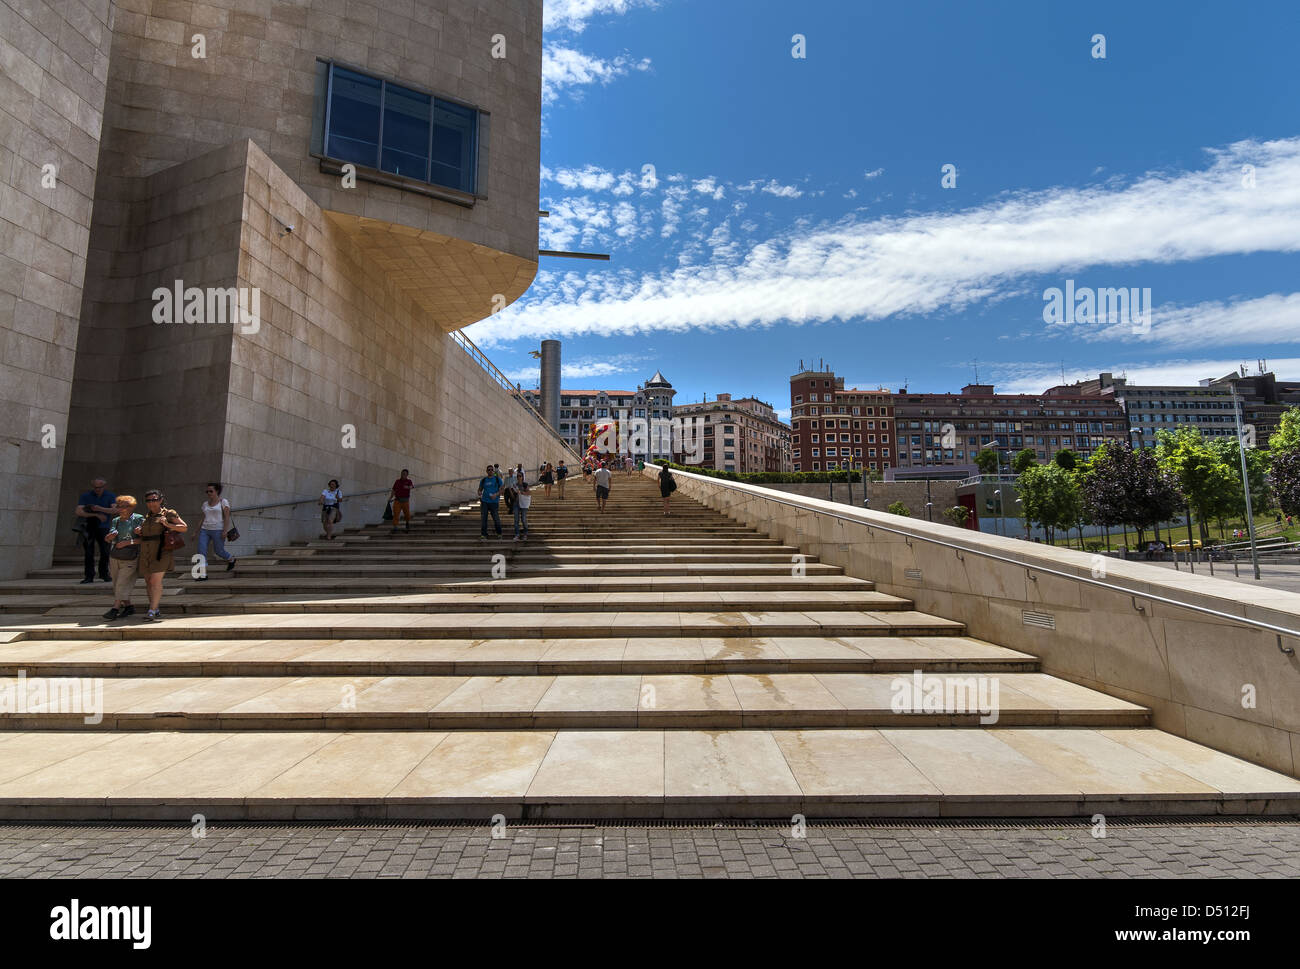 Le musée Guggenheim conçu par l'architecte Frank Gehry, canado-américaines et situé à Bilbao, Pays Basque, Espagne Banque D'Images